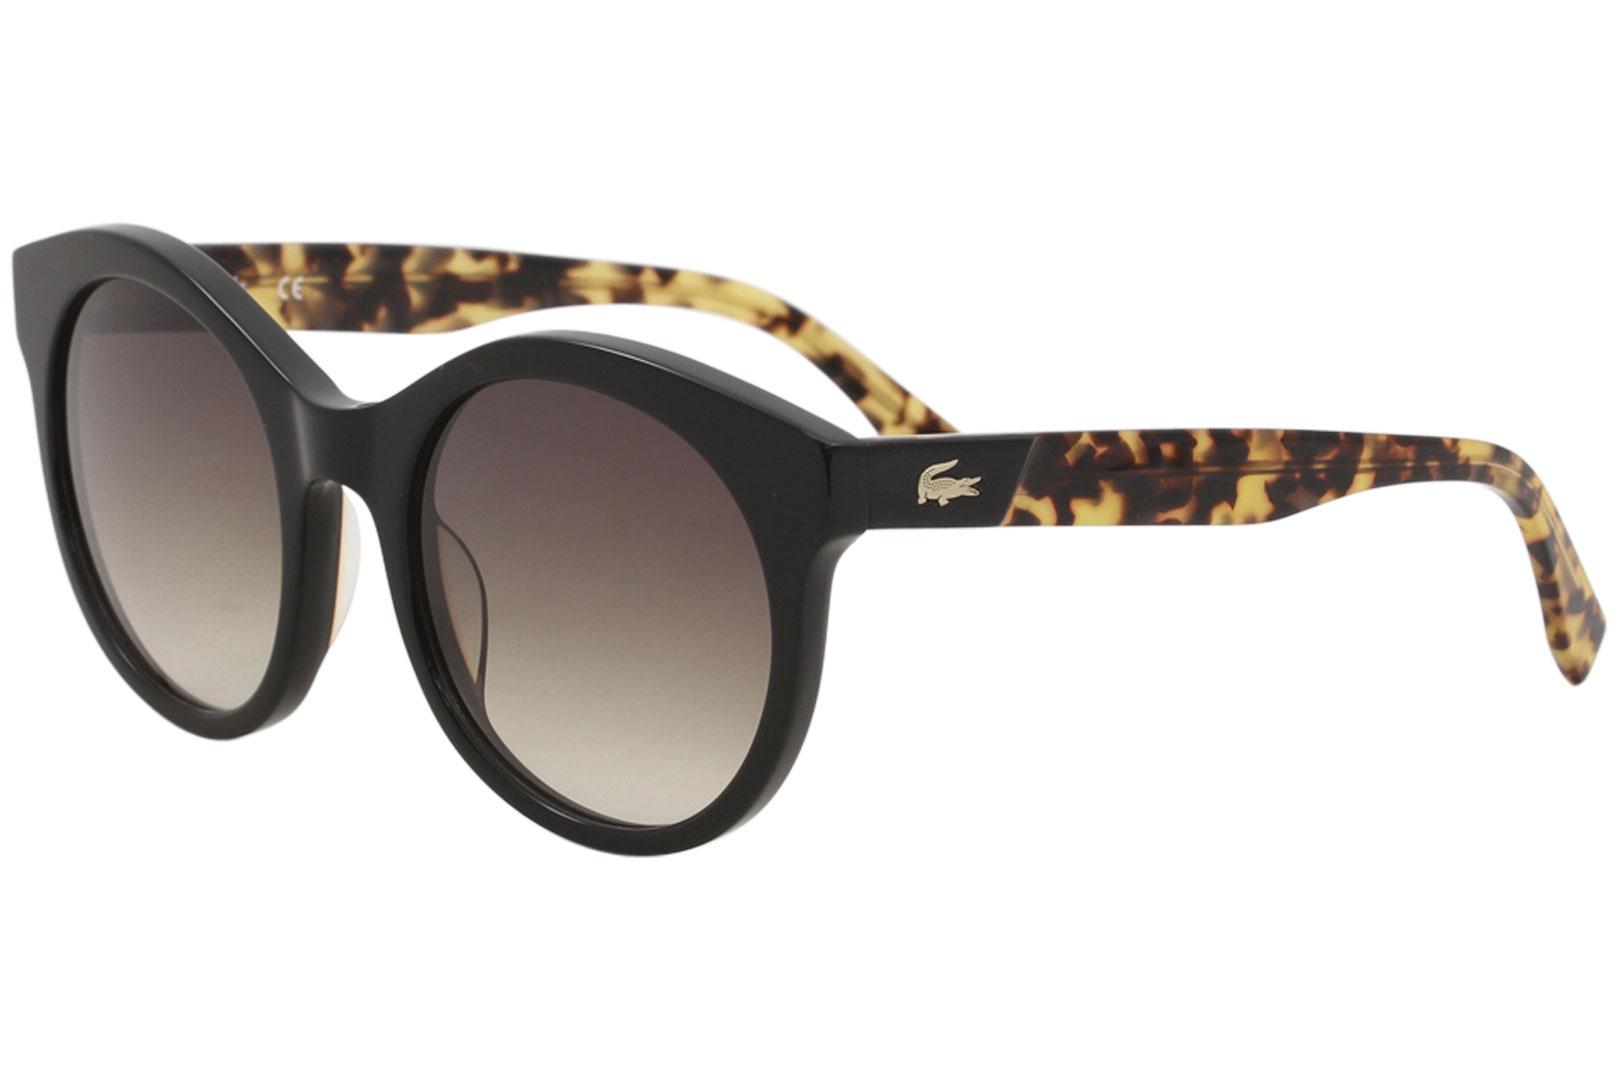 Lacoste Men's L851S L/851/S 001 Black/Havana Fashion Round Sunglasses 53mm - Black Tortoise/Brown Gradient   001 - Lens 53 Bridge 21 Temple 140mm